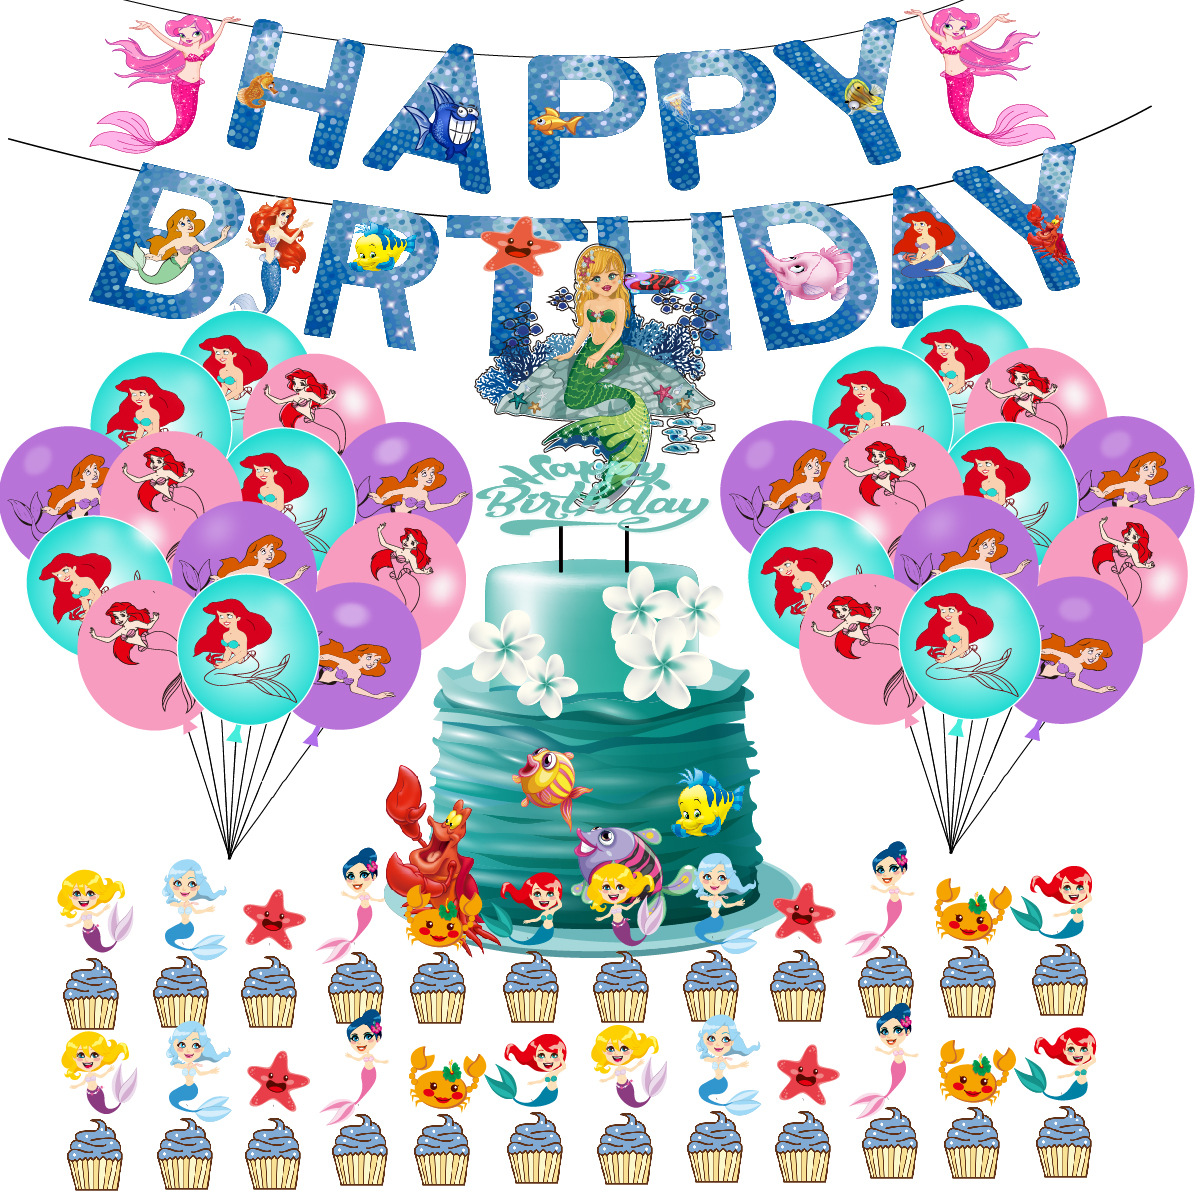 美人鱼主题生日派对装饰套装气球套装拉旗气球大小插排场景布置派对用品